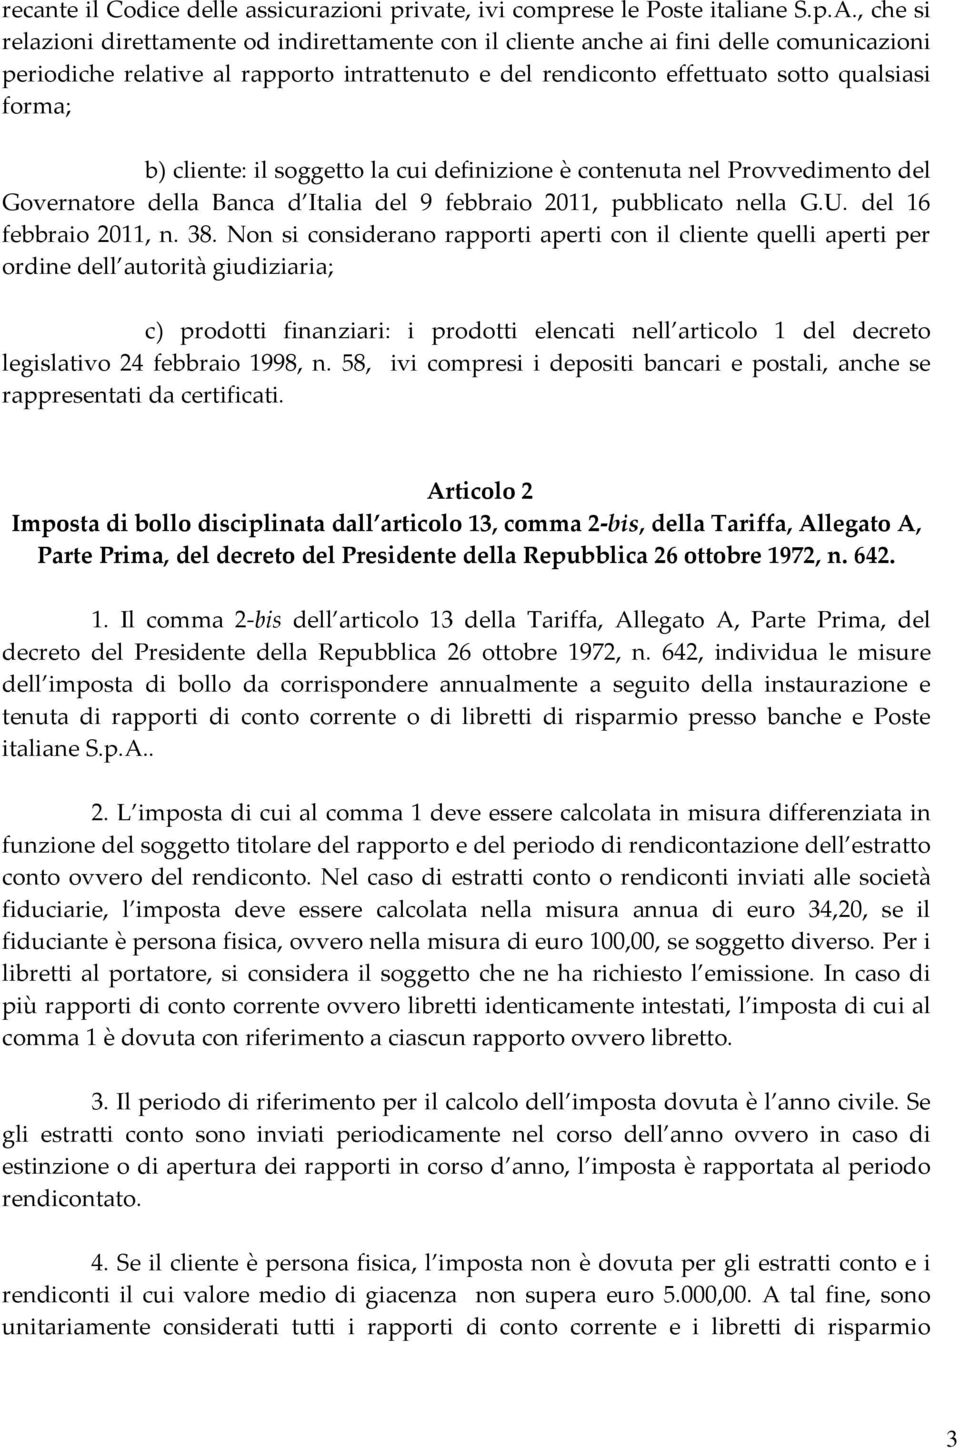 cliente: il soggetto la cui definizione è contenuta nel Provvedimento del Governatore della Banca d Italia del 9 febbraio 2011, pubblicato nella G.U. del 16 febbraio 2011, n. 38.